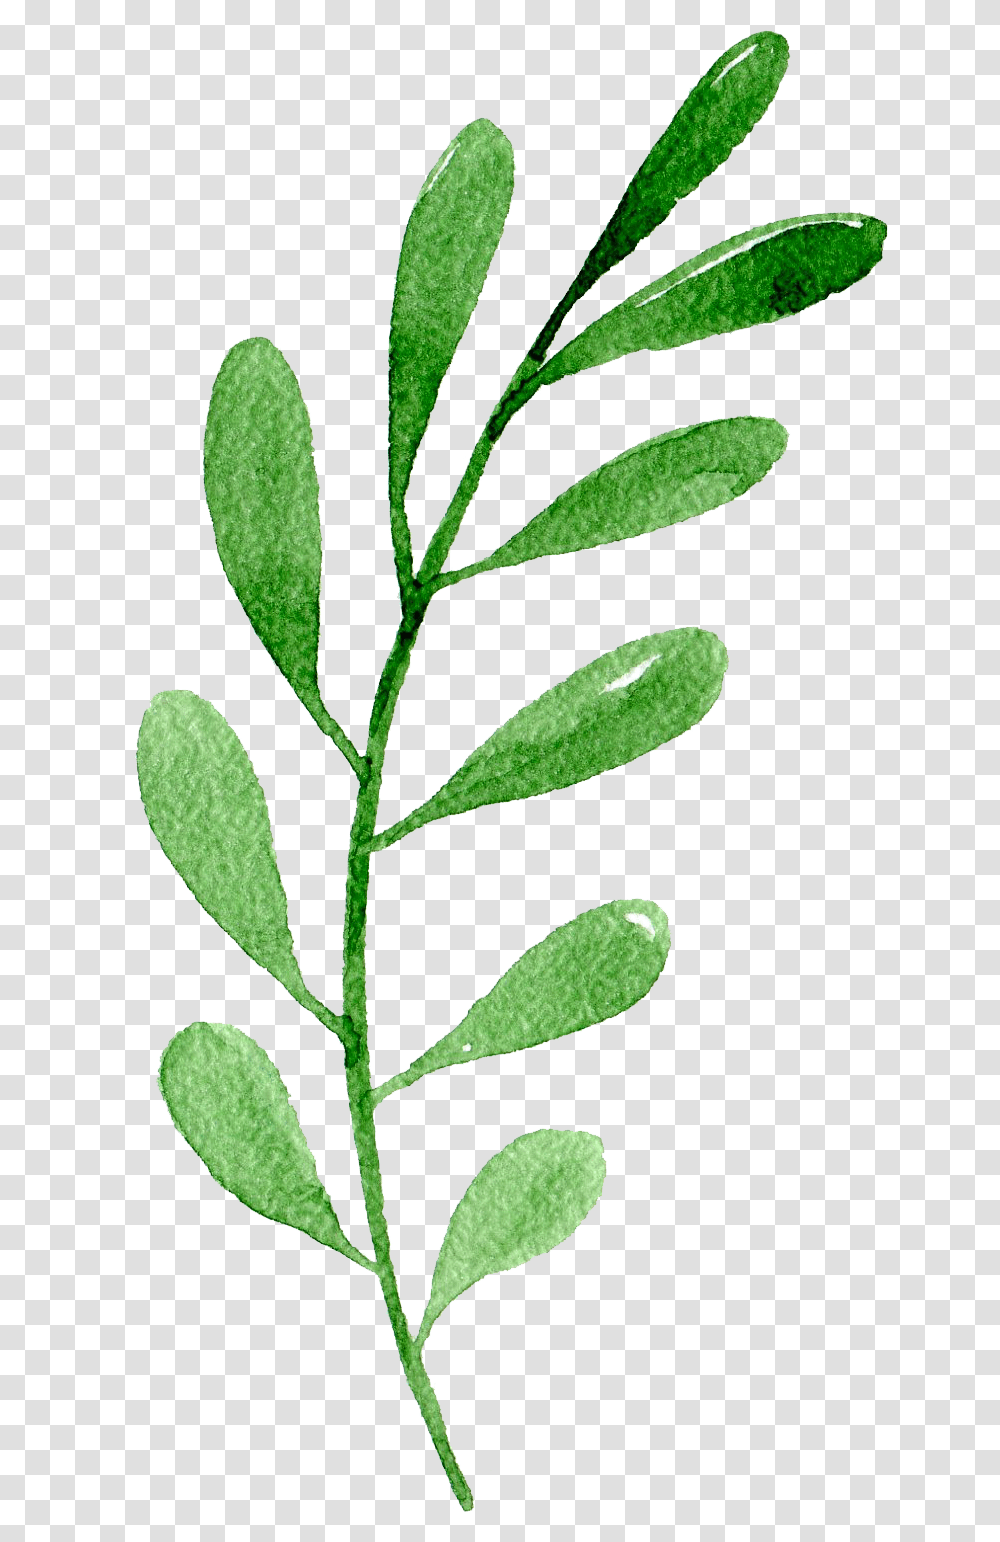 Single Green Leaf One Leaf Green, Plant, Grass, Jar, Vase Transparent Png